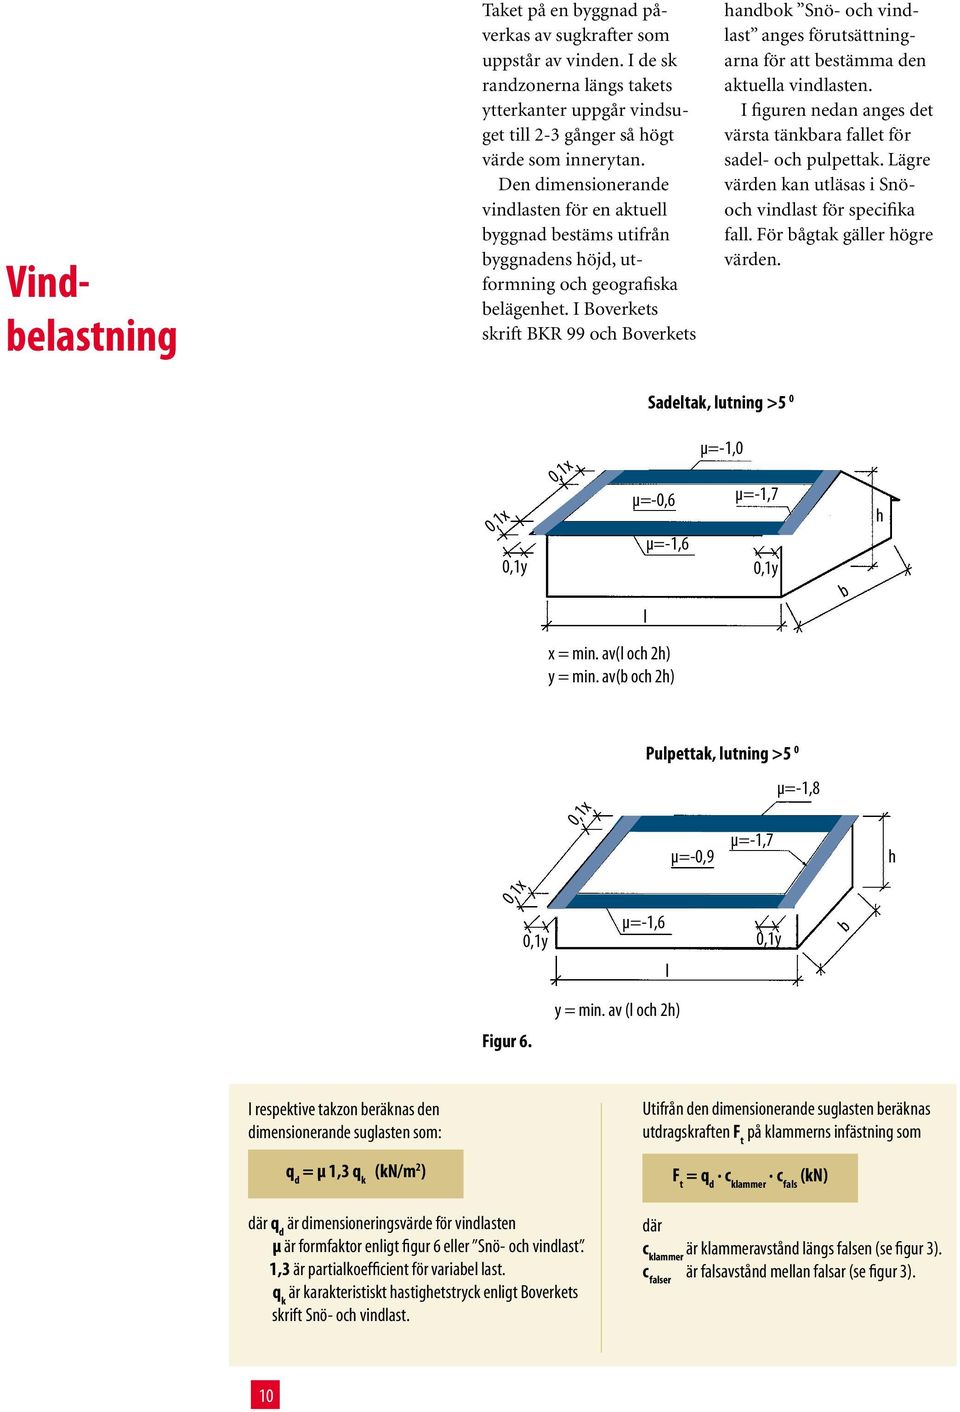 I Boverkets skrift BKR 99 och Boverkets handbok Snö- och vindlast anges förutsättningarna för att bestämma den aktuella vindlasten.